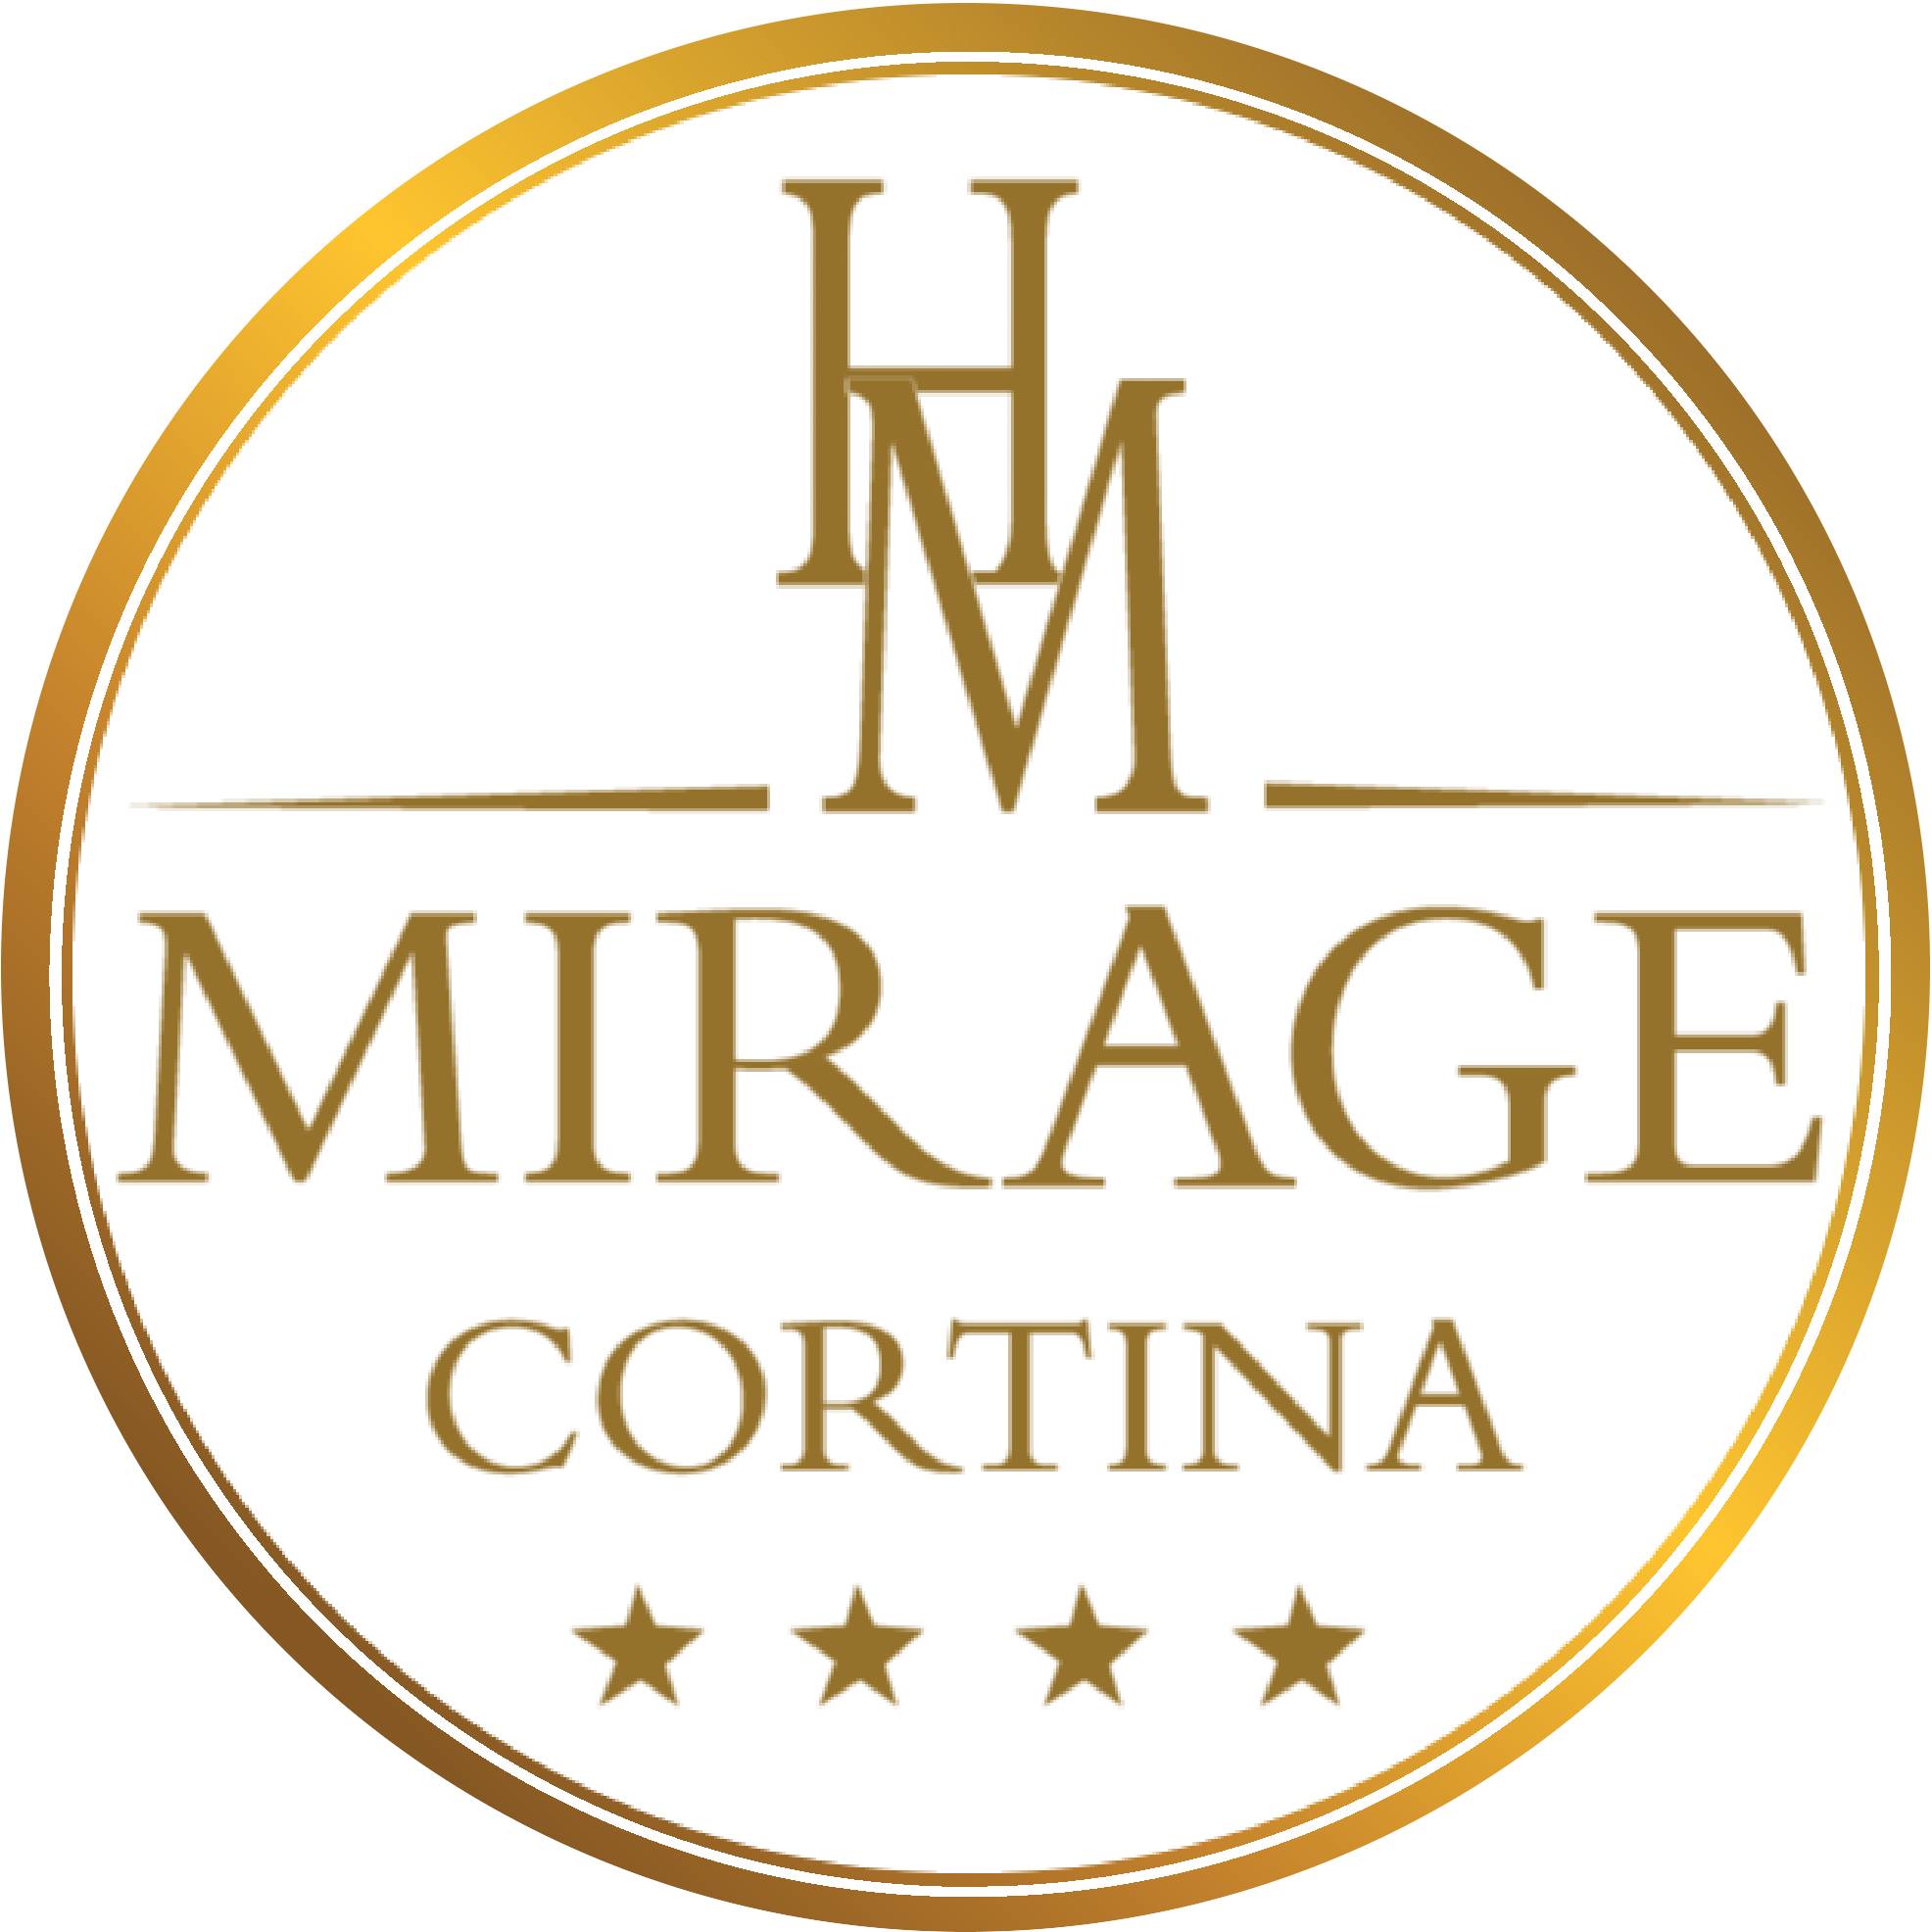 Hotel Mirage Cortina